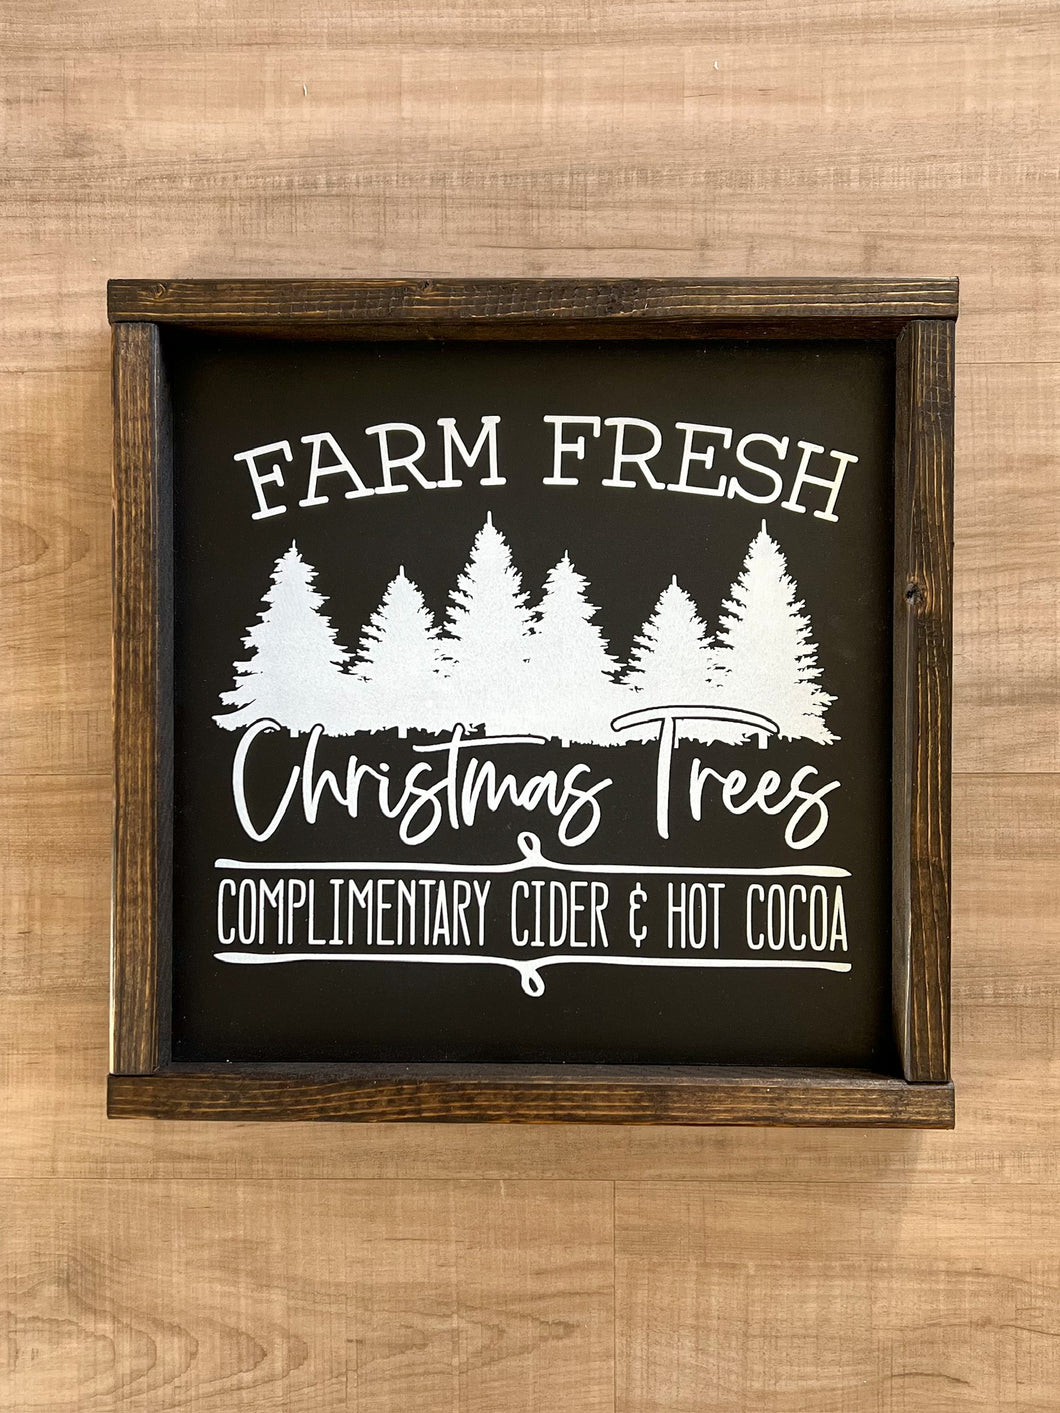 Farm fresh Christmas trees | READY TO SHIP